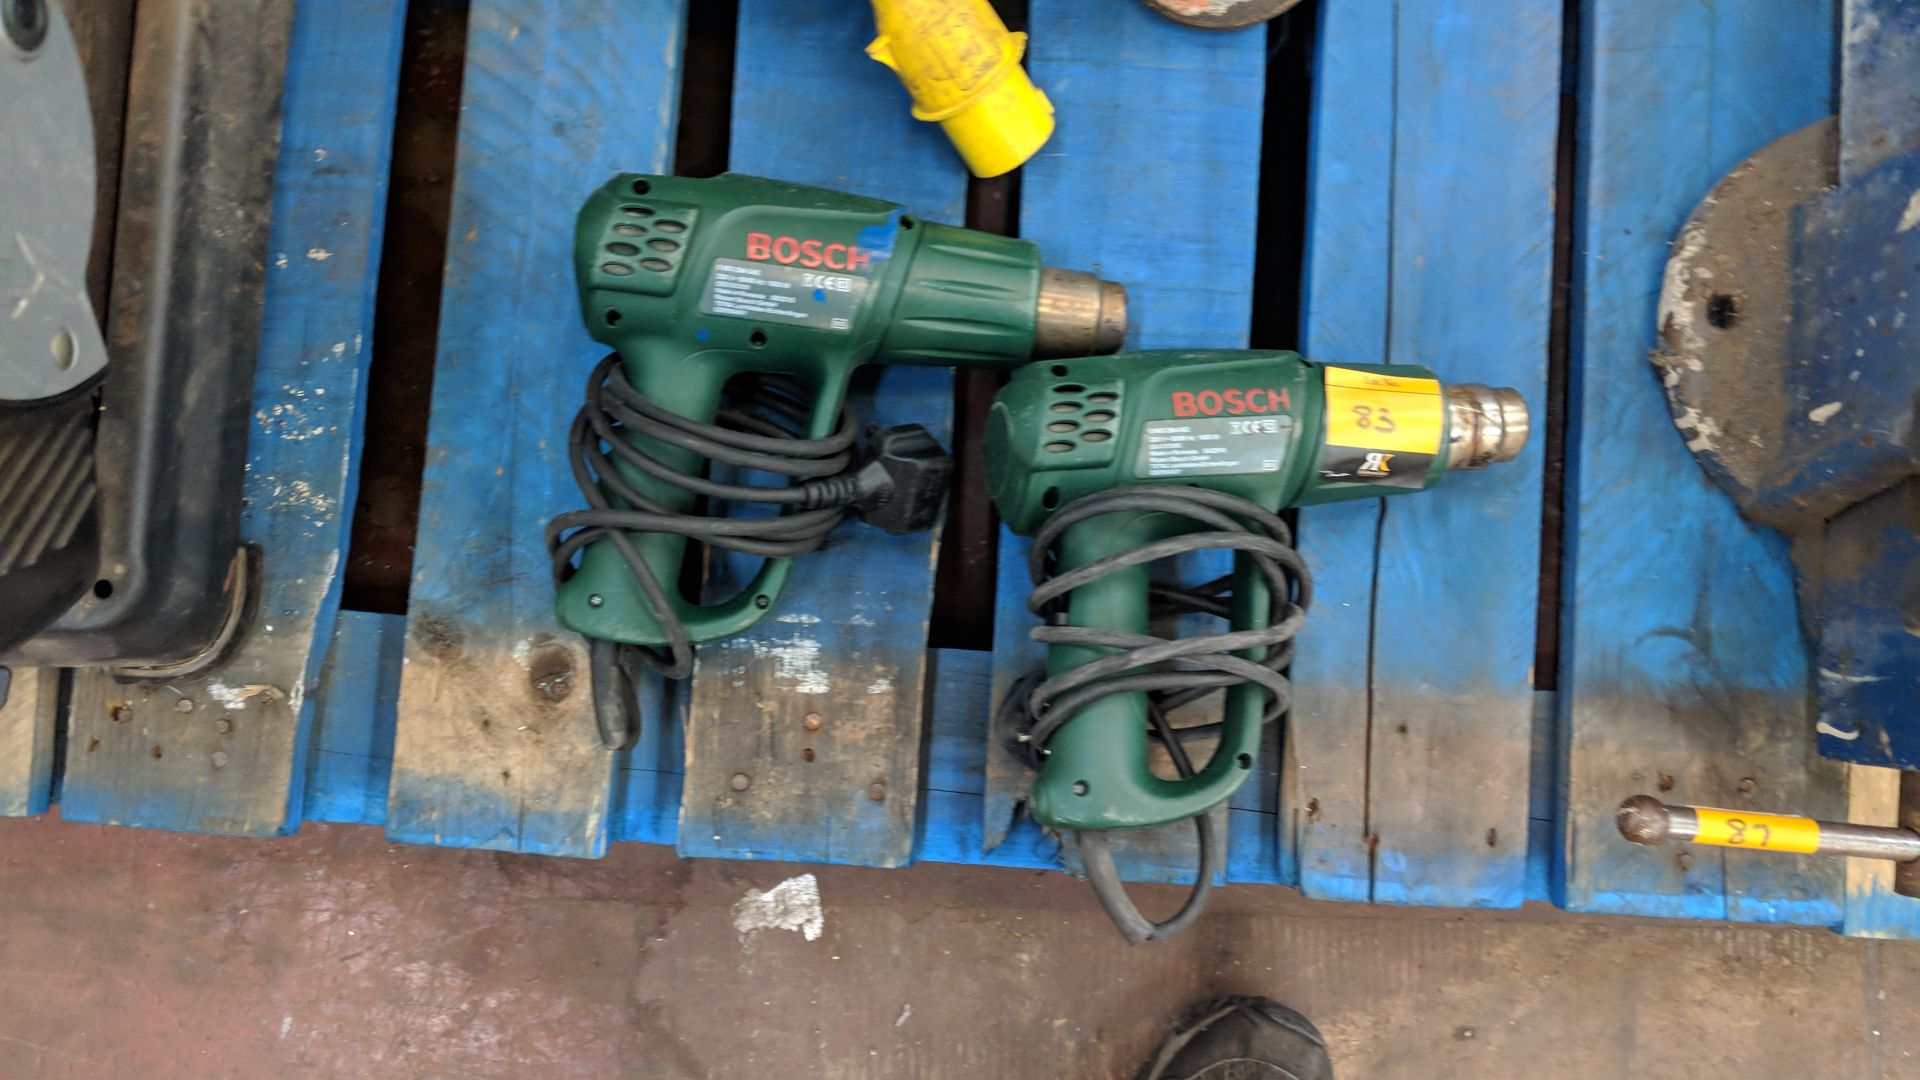 Pair of Bosch heat guns